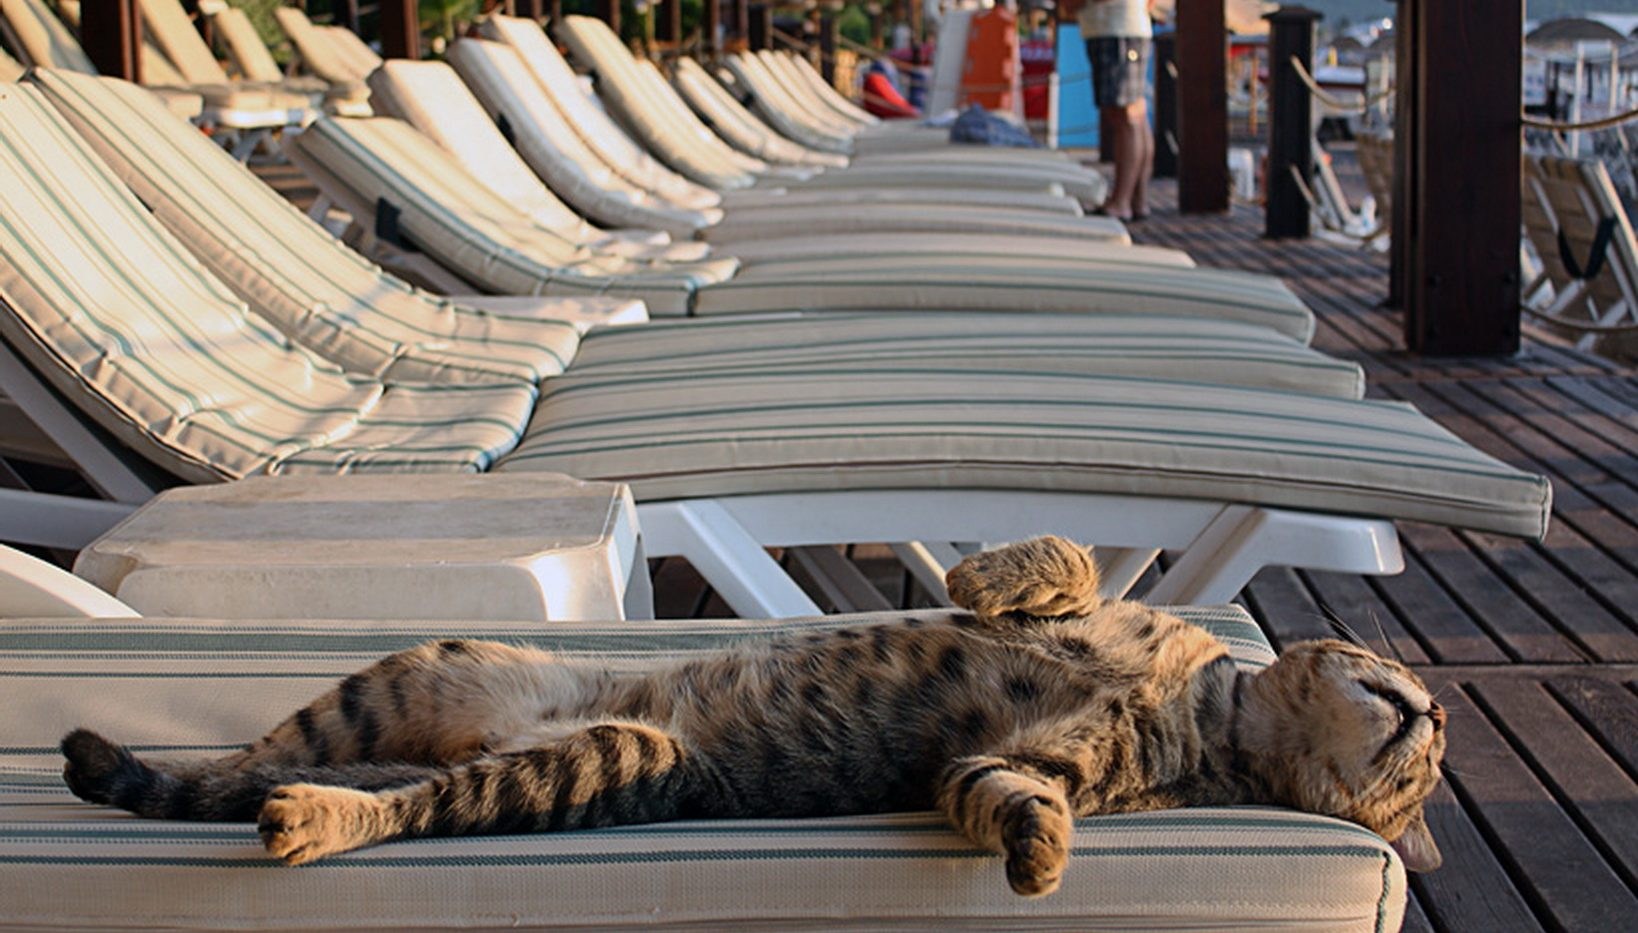 Фото хочется. Кот отдыхает. Кот на лежаке на пляже. Кот на шезлонге. Кот отдыхает на пляже.